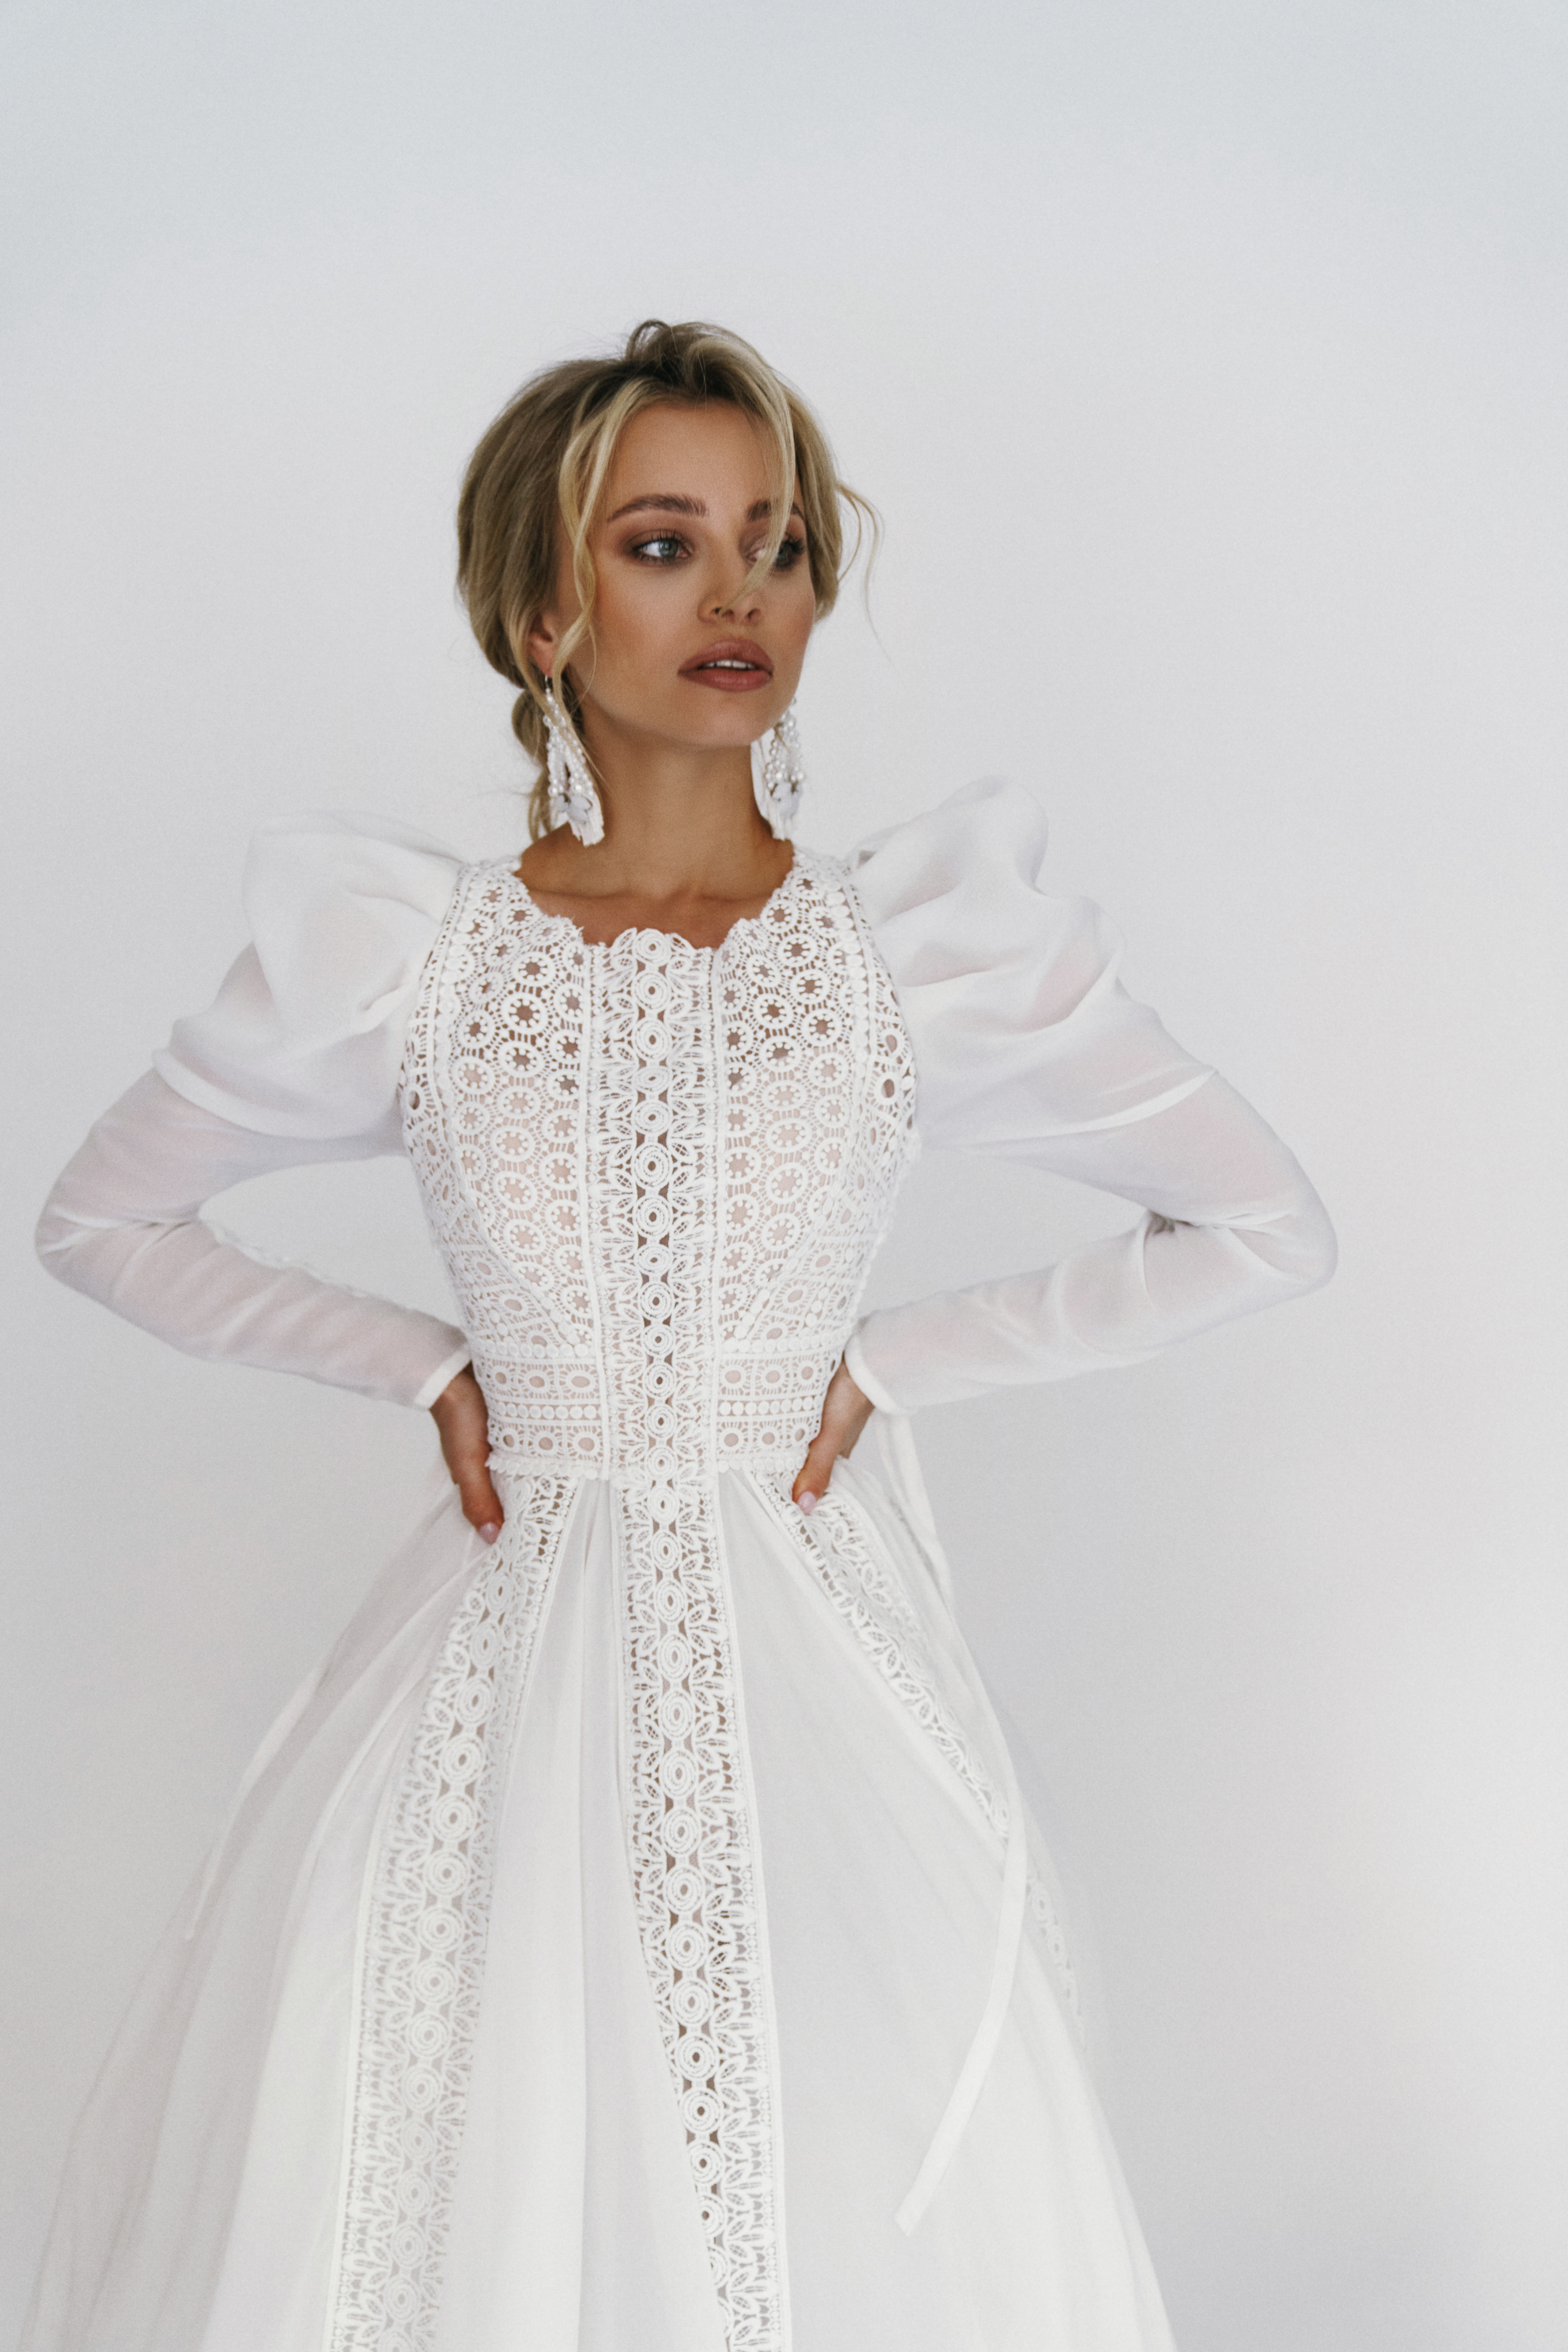 Купить свадебное платье «Забава» из шифона с кружевом Рара Авис из коллекции Искра 2021 года в интернет-магазине